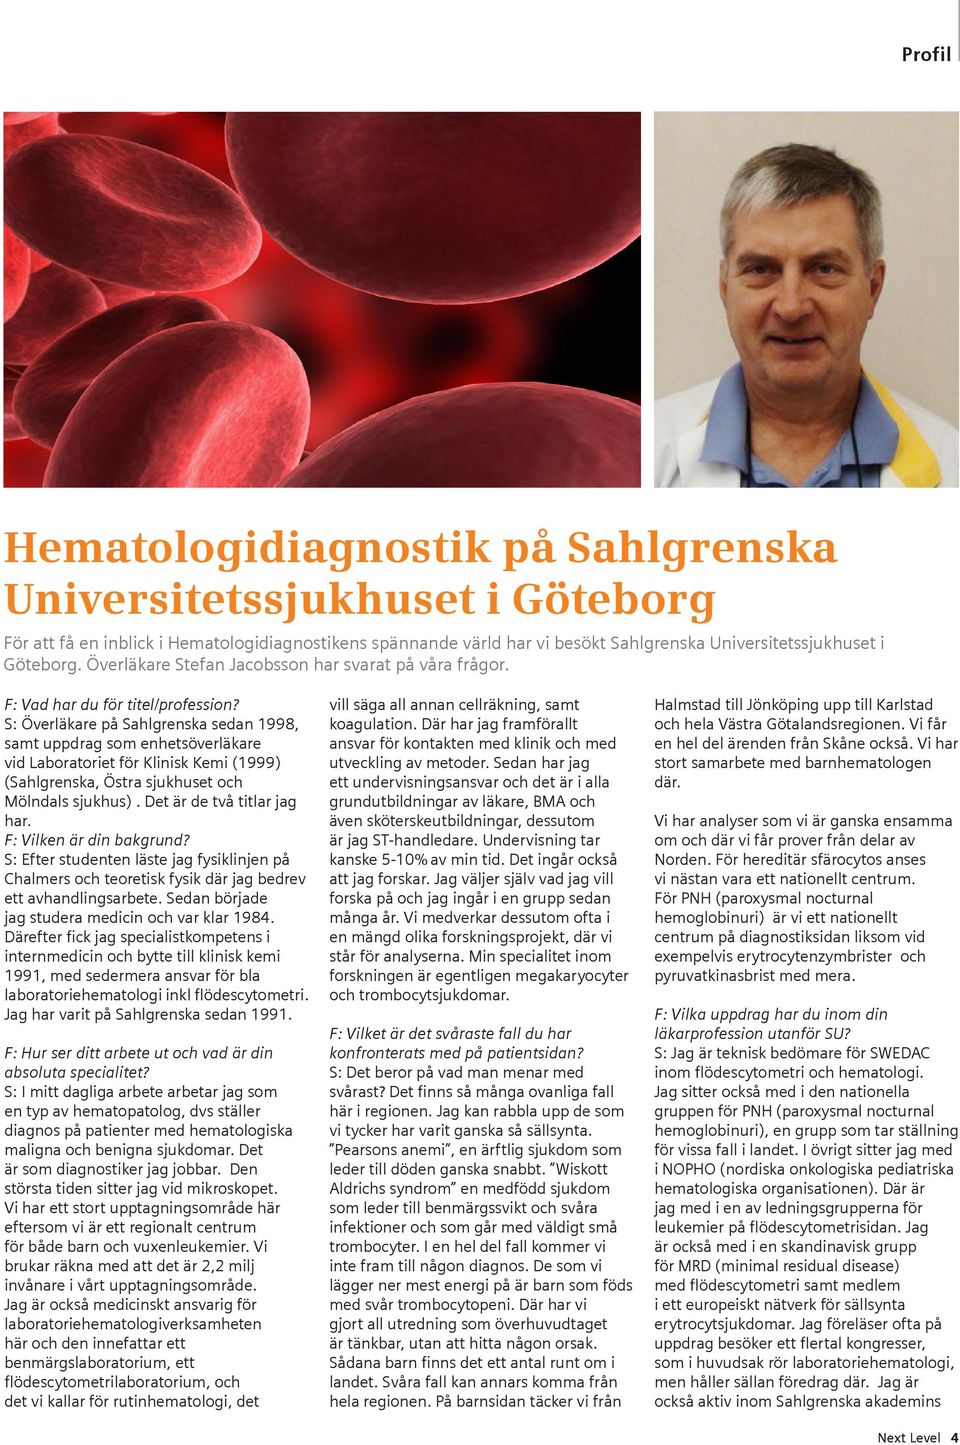 S: Överläkare på Sahlgrenska sedan 1998, samt uppdrag som enhetsöverläkare vid Laboratoriet för Klinisk Kemi (1999) (Sahlgrenska, Östra sjukhuset och Mölndals sjukhus). Det är de två titlar jag har.